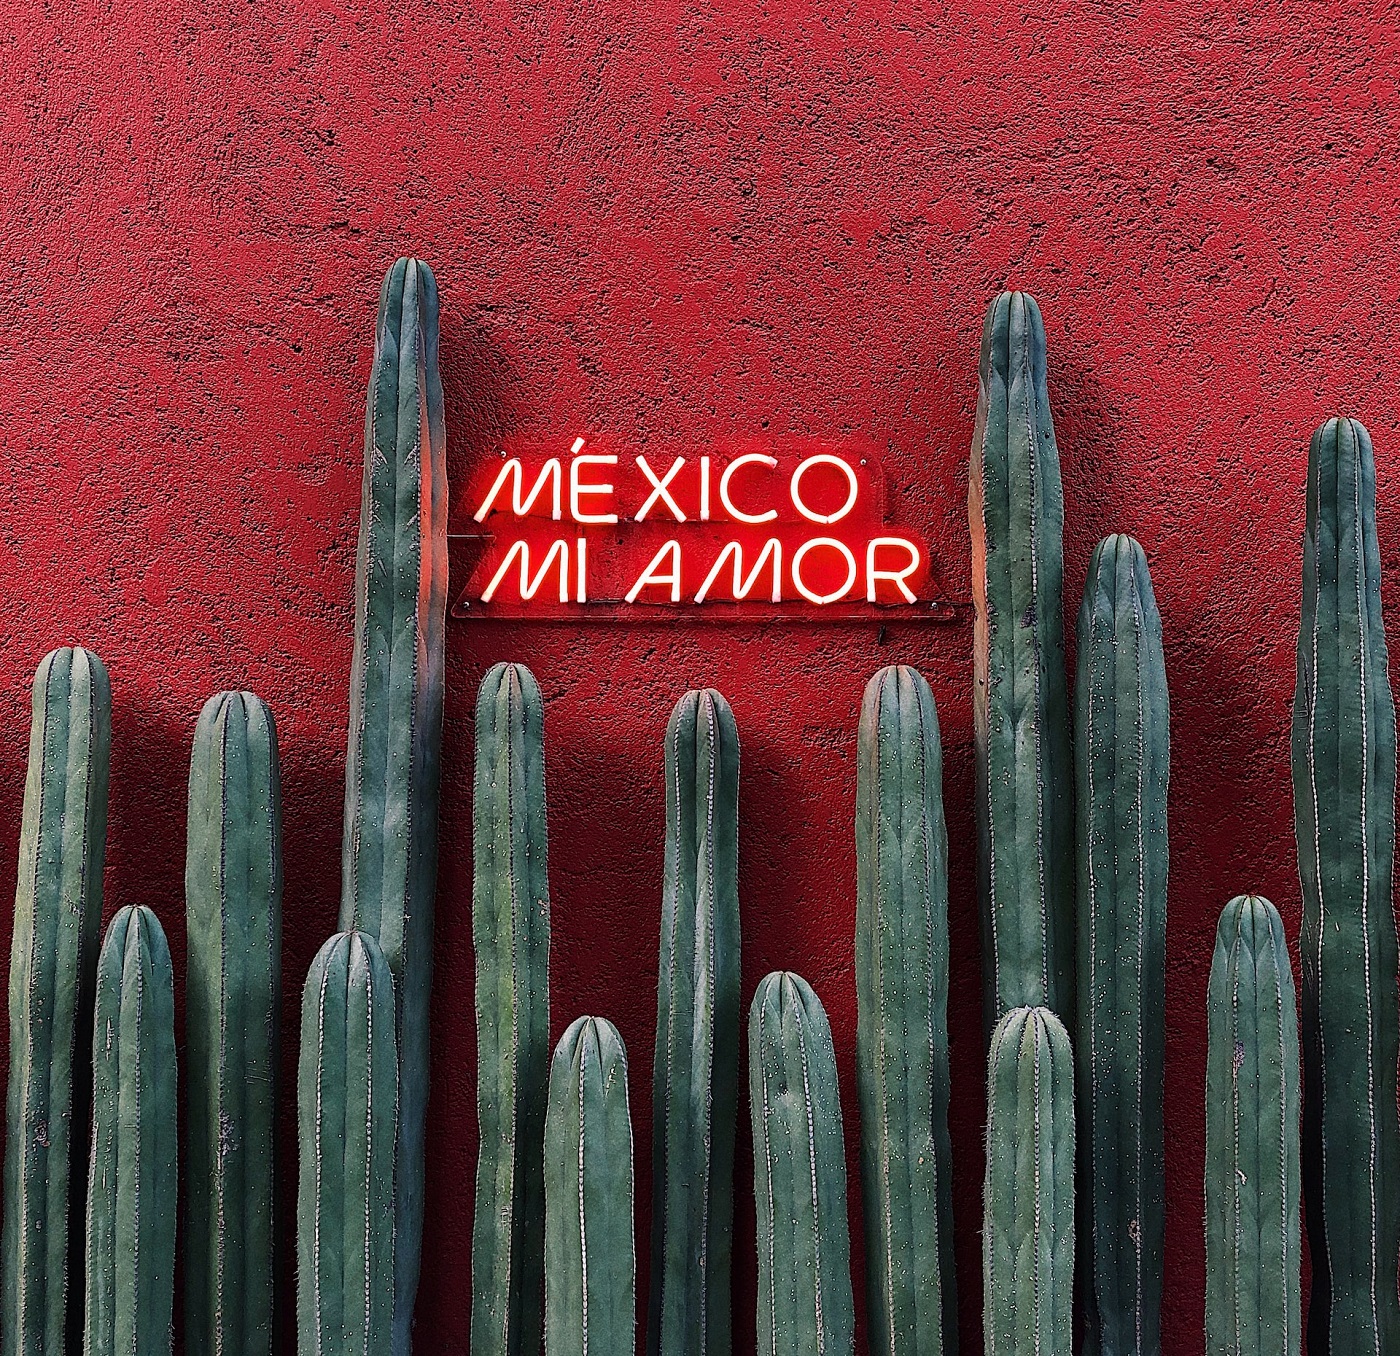 Migliori tacos a Città del Messico. Cactus con sfondo su muro rosso spento e scritta al neon rossa "Mexico mi amor".